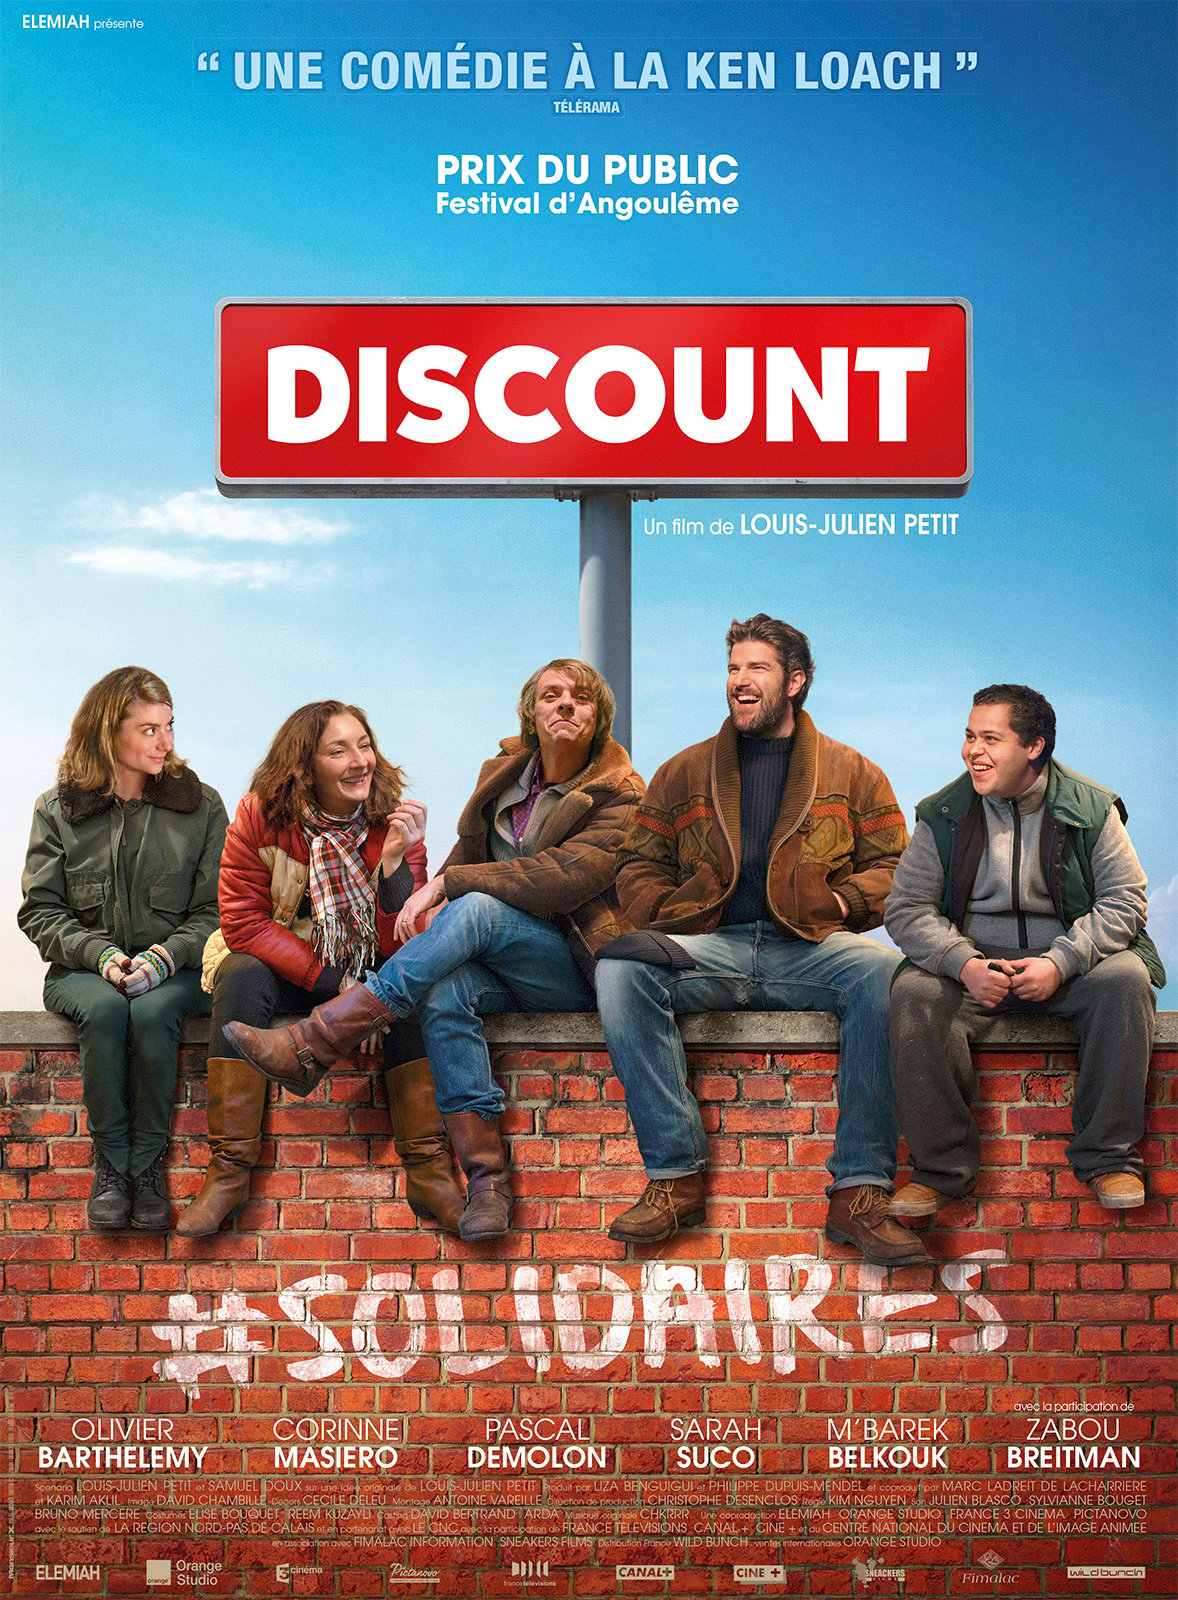 Trailer de la série Die Discounter Bande-annonce VO - CinéSérie